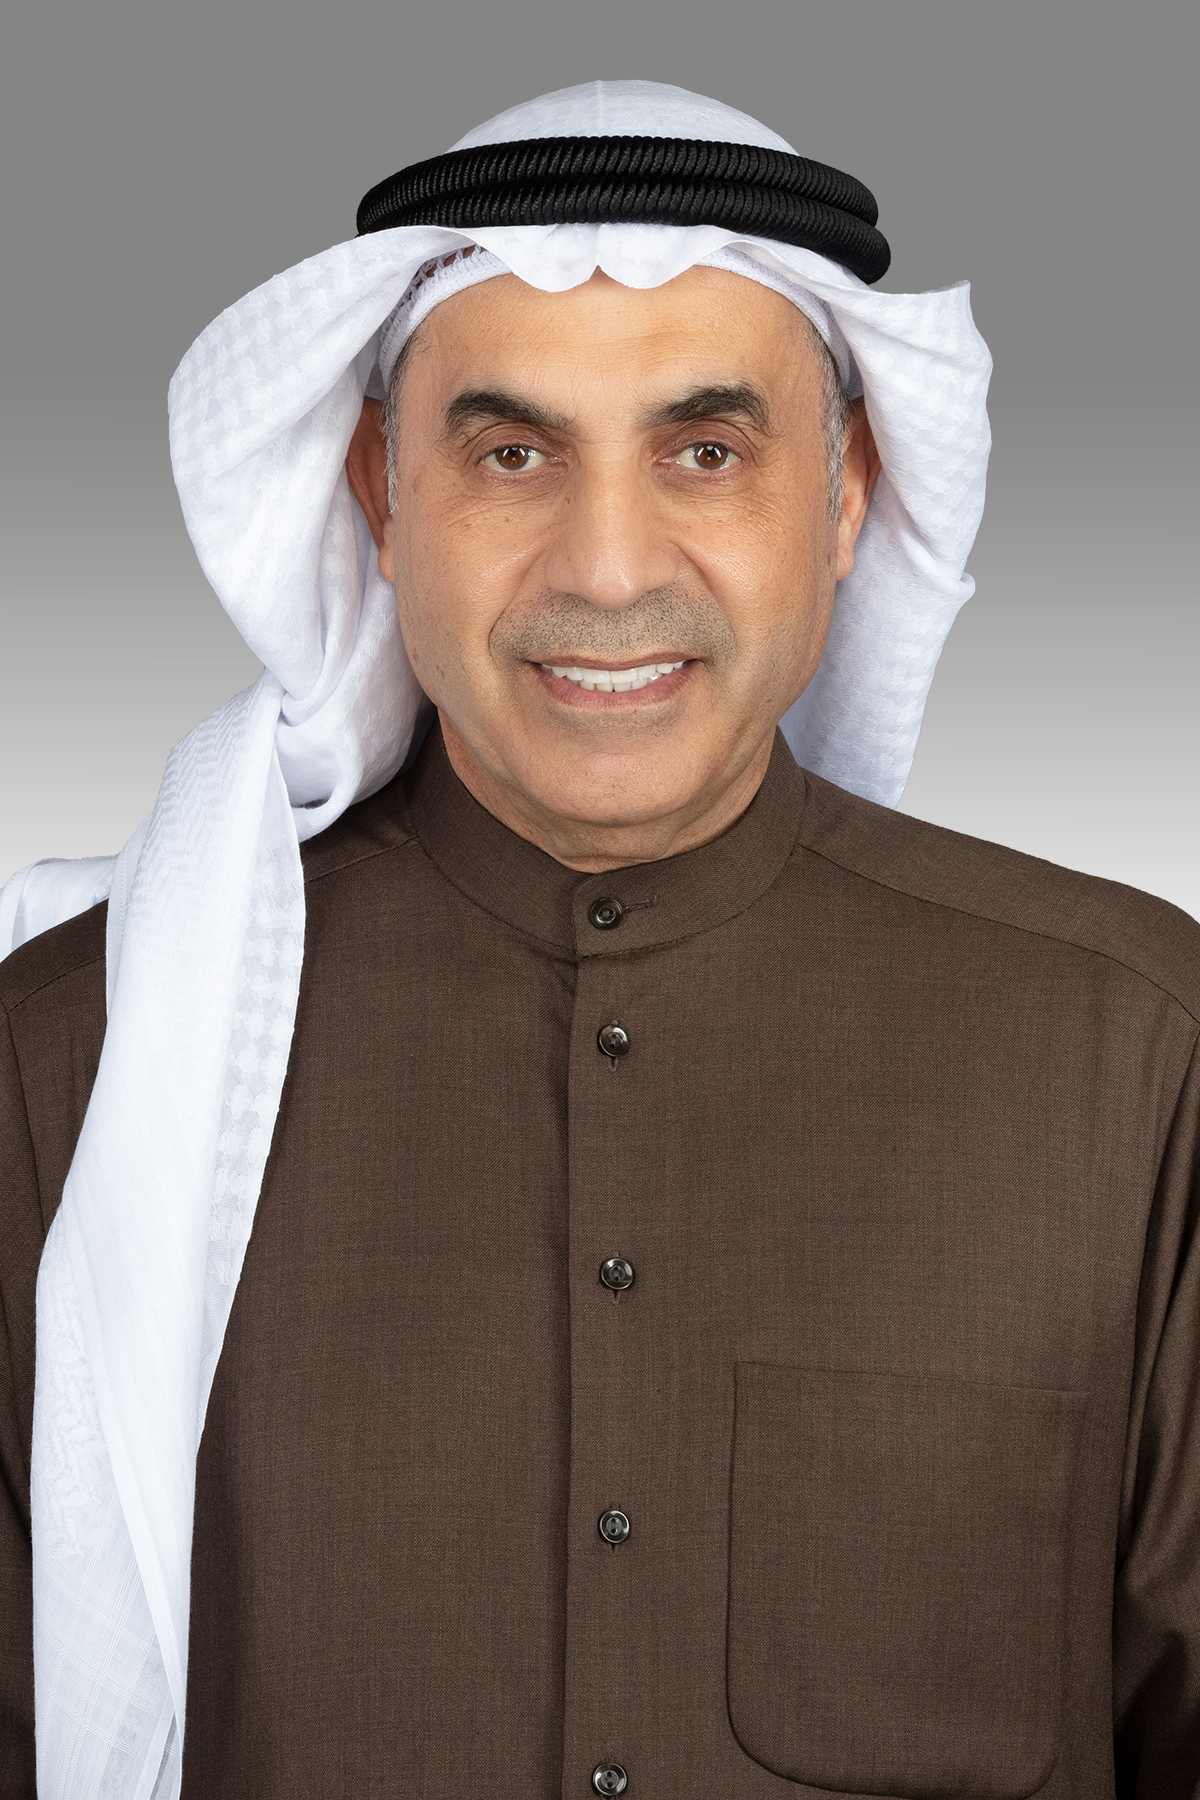 عبدالله الطريجي يقترح قيام الحكومة بدراسة شاملة للرواتب والوظائف في الكويت